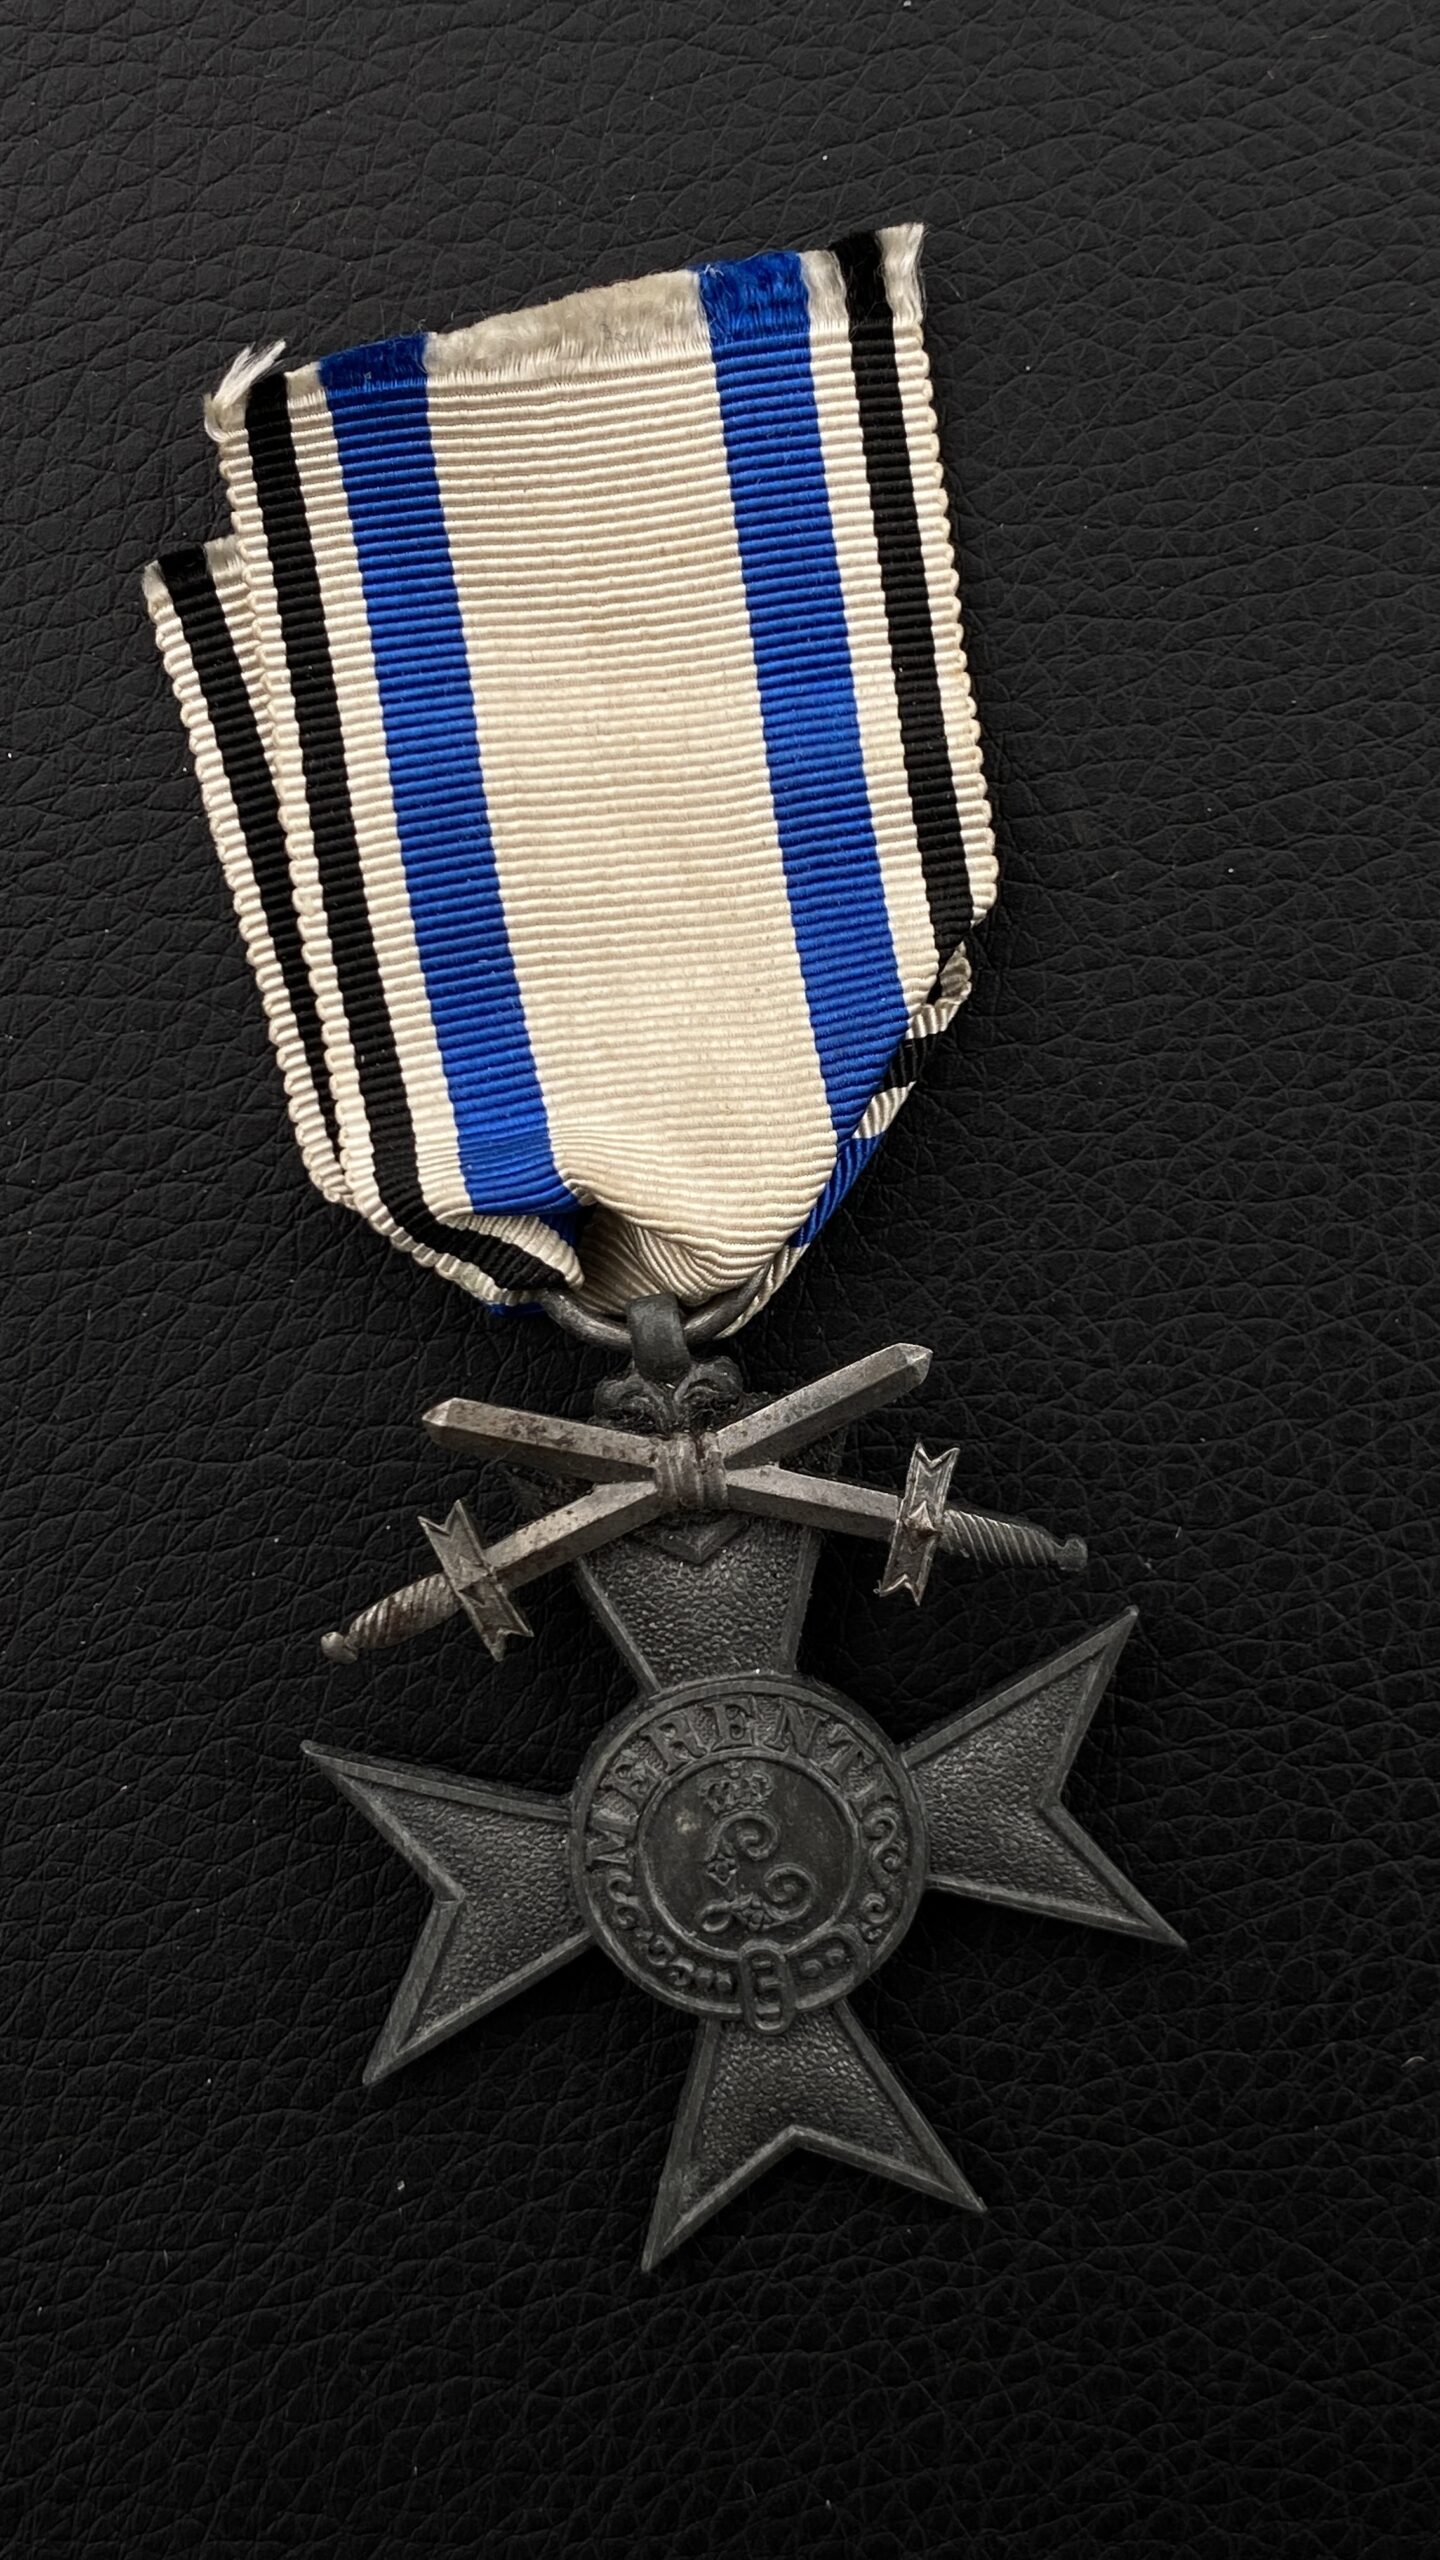 Баварский крест «За военные заслуги» с мечами (нем. Militär-Verdienstkreuz).